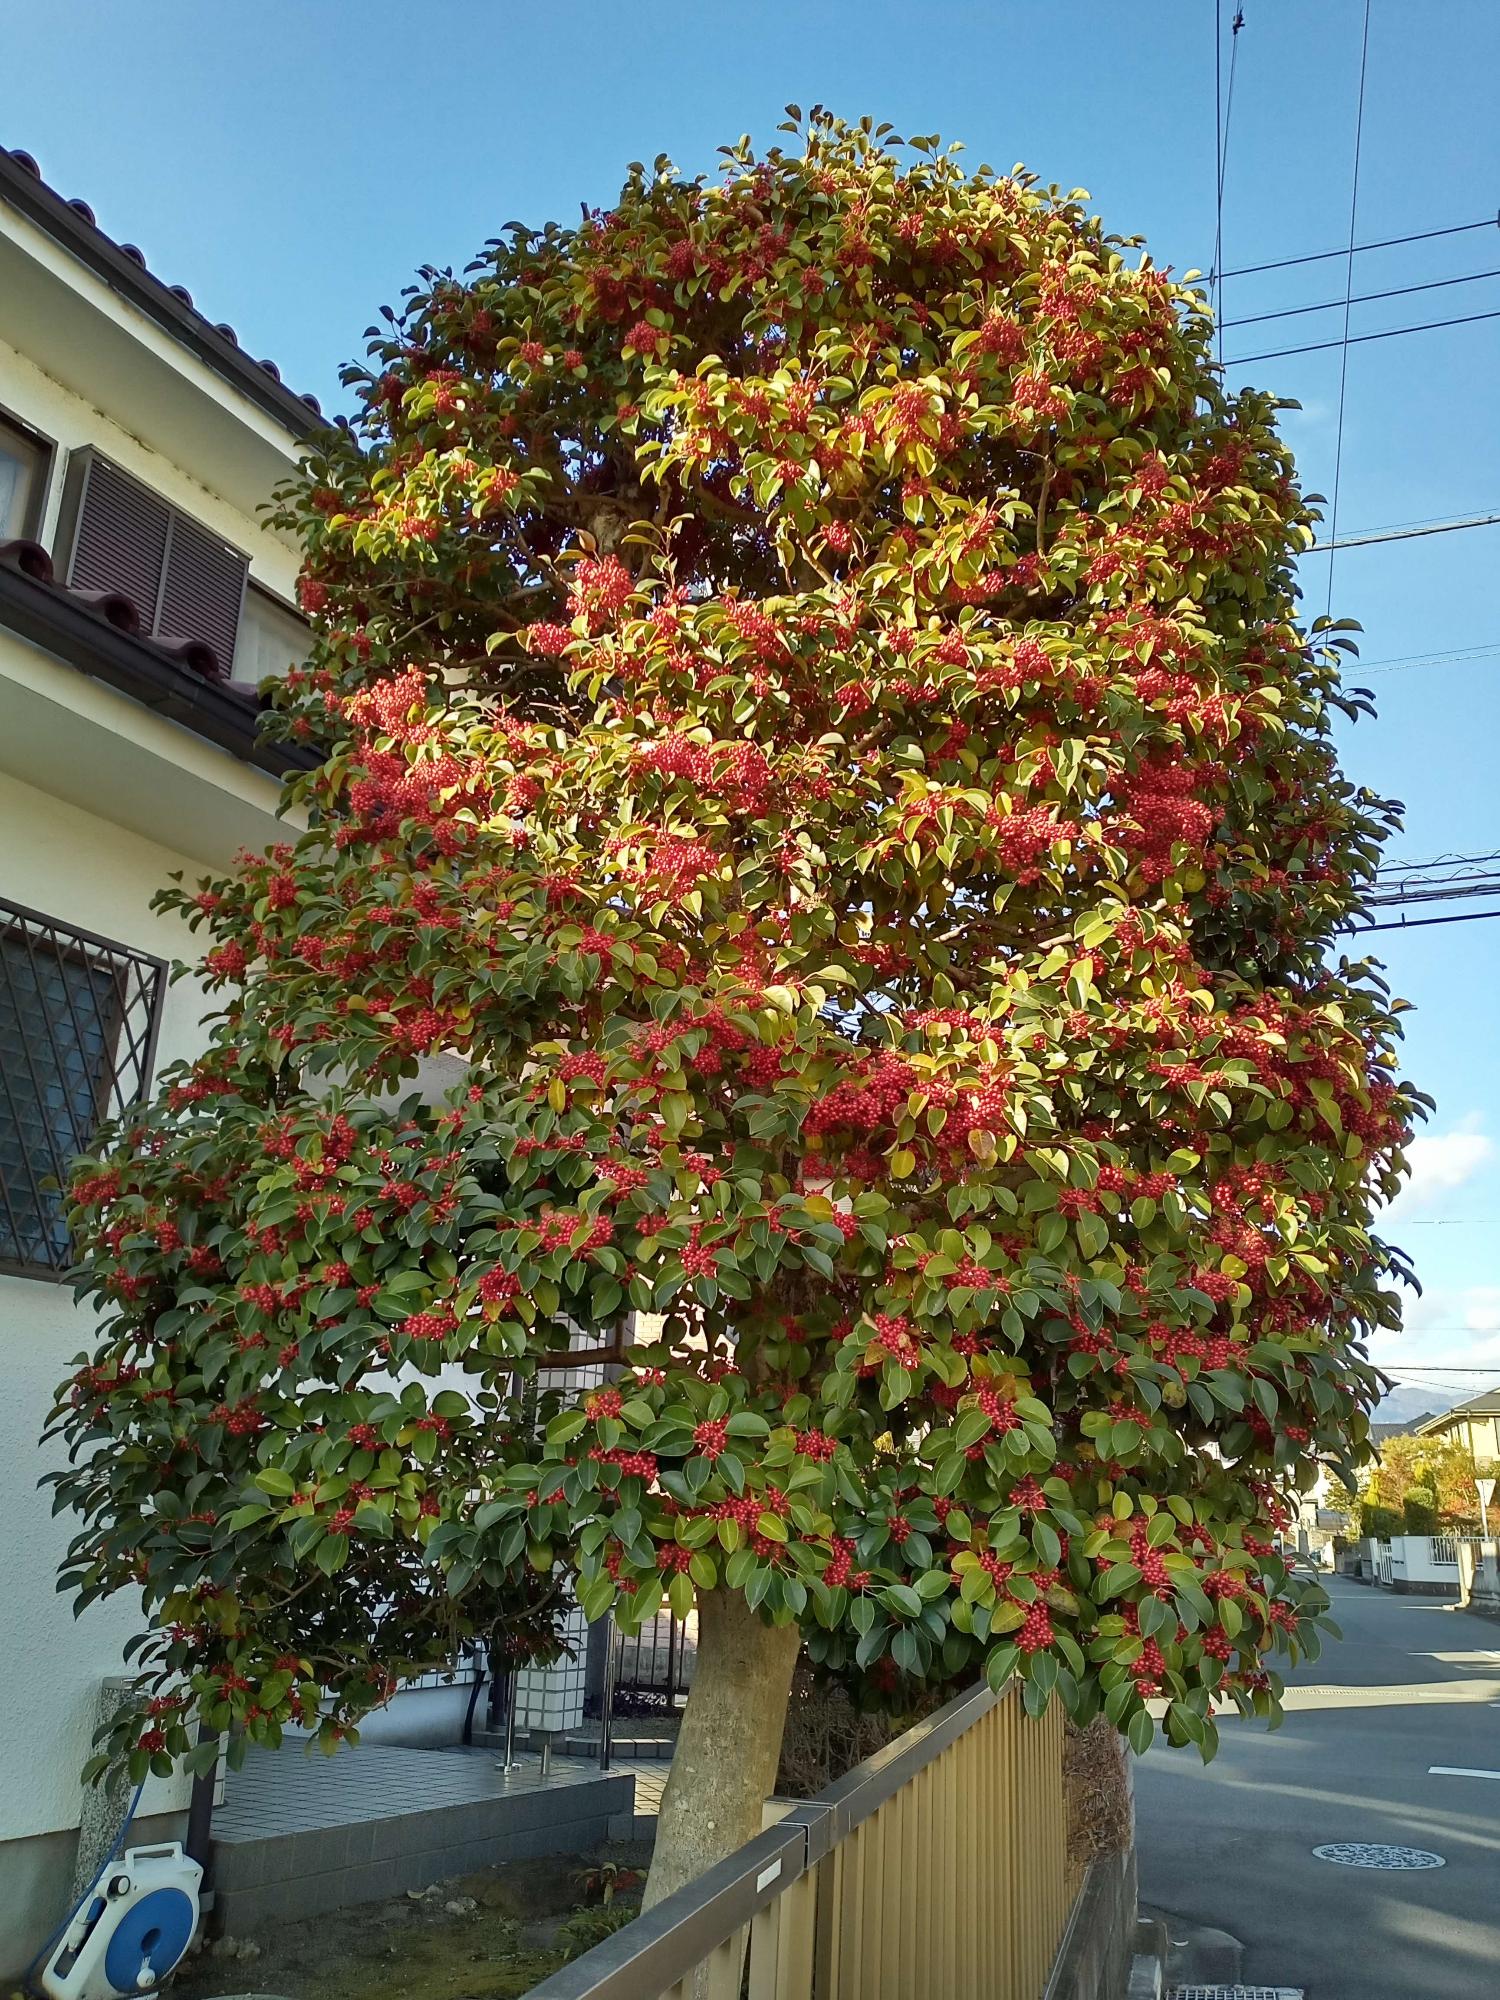 赤い実をたくさんつけた大きな樹木